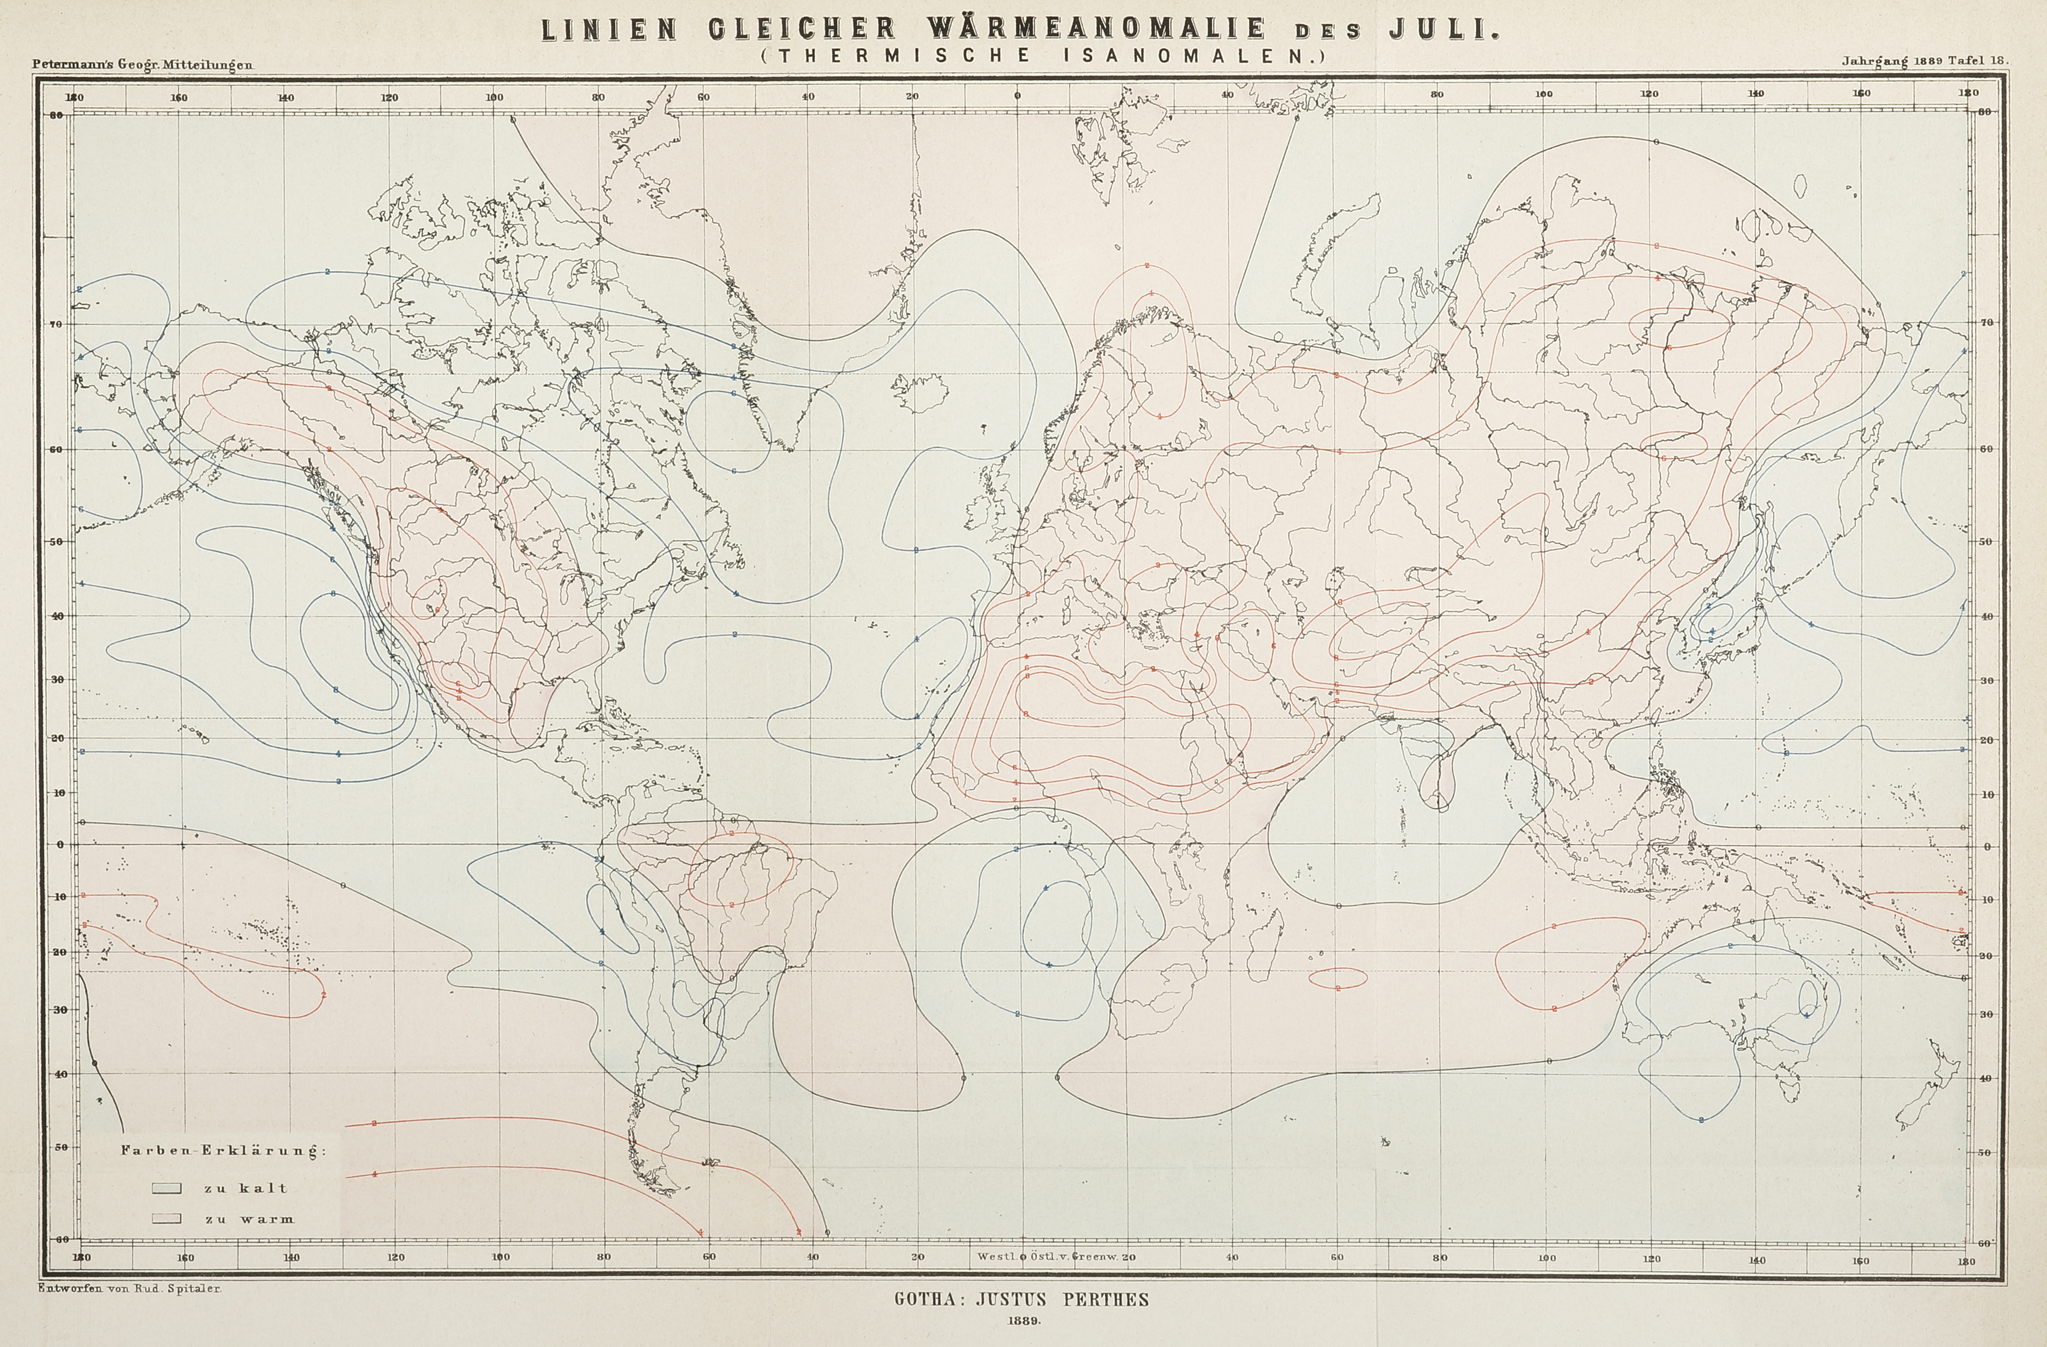 Linien Gleicher Warmeanomalie des Juli. (Thermische Isanomalen.) - Antique Map from 1889